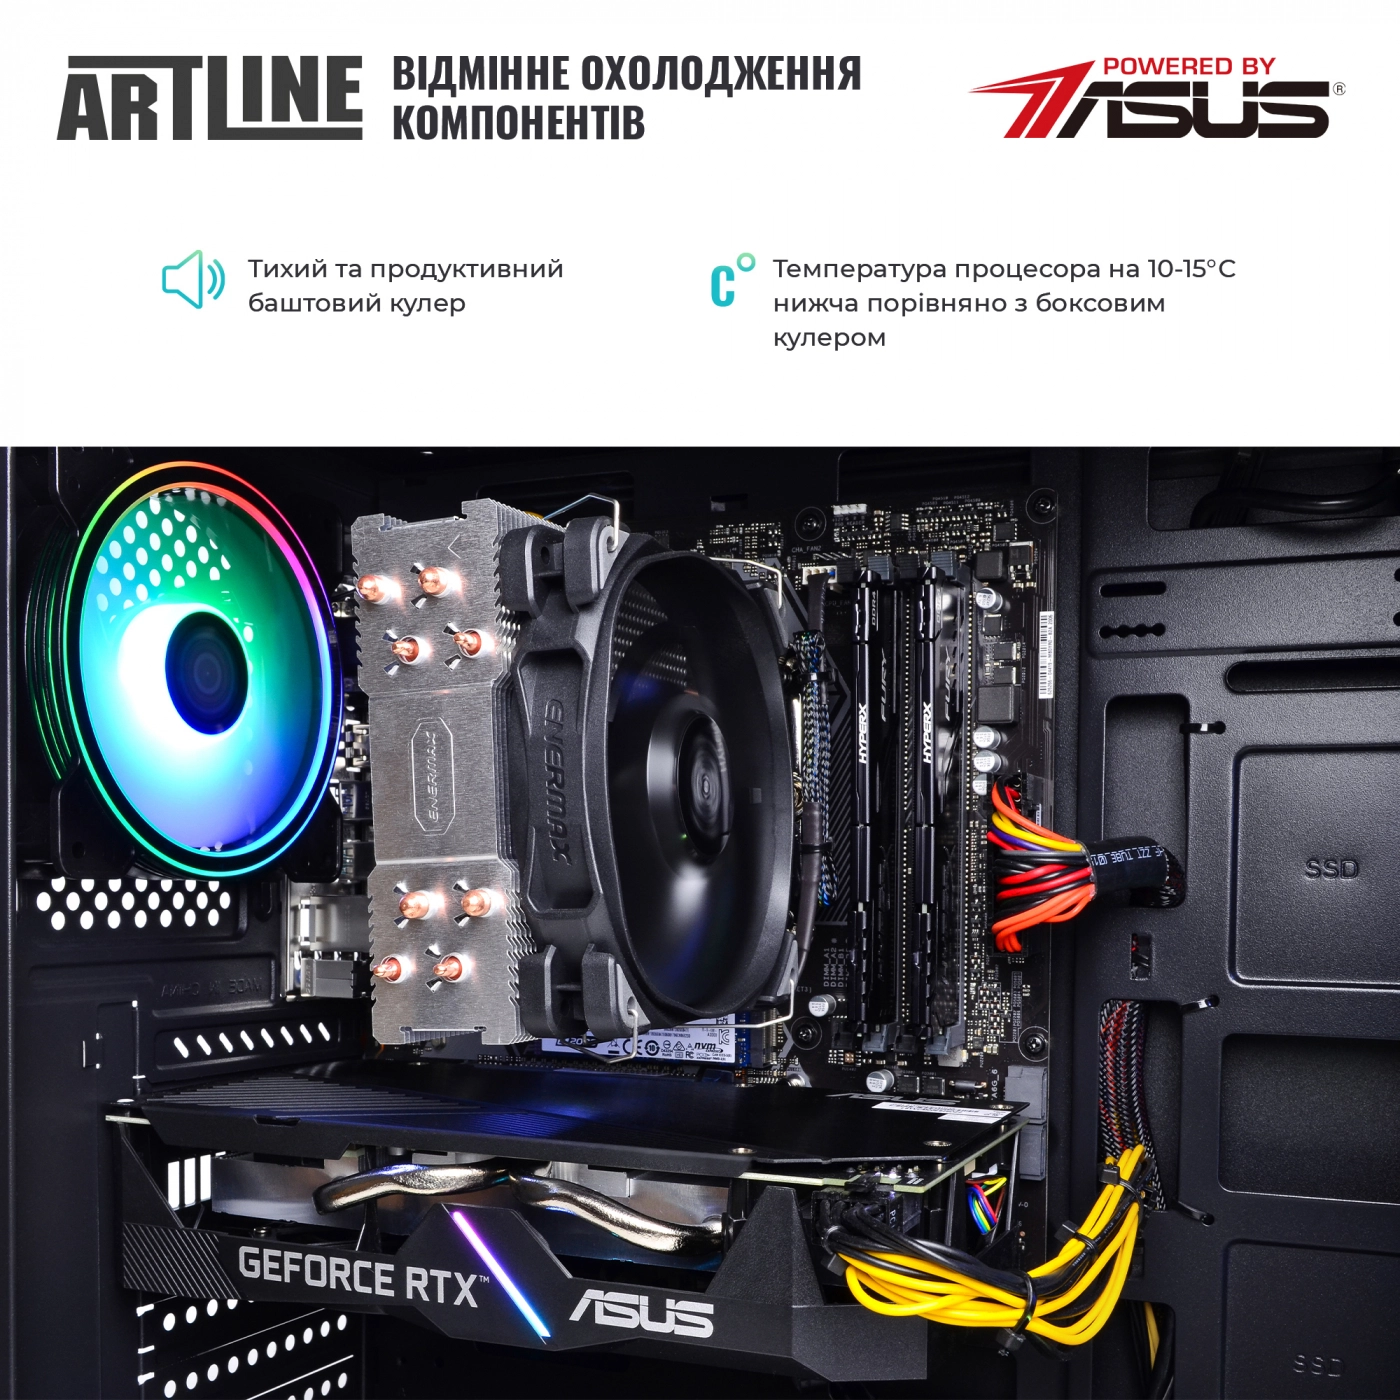 Купить Компьютер ARTLINE Gaming X63v20 - фото 5